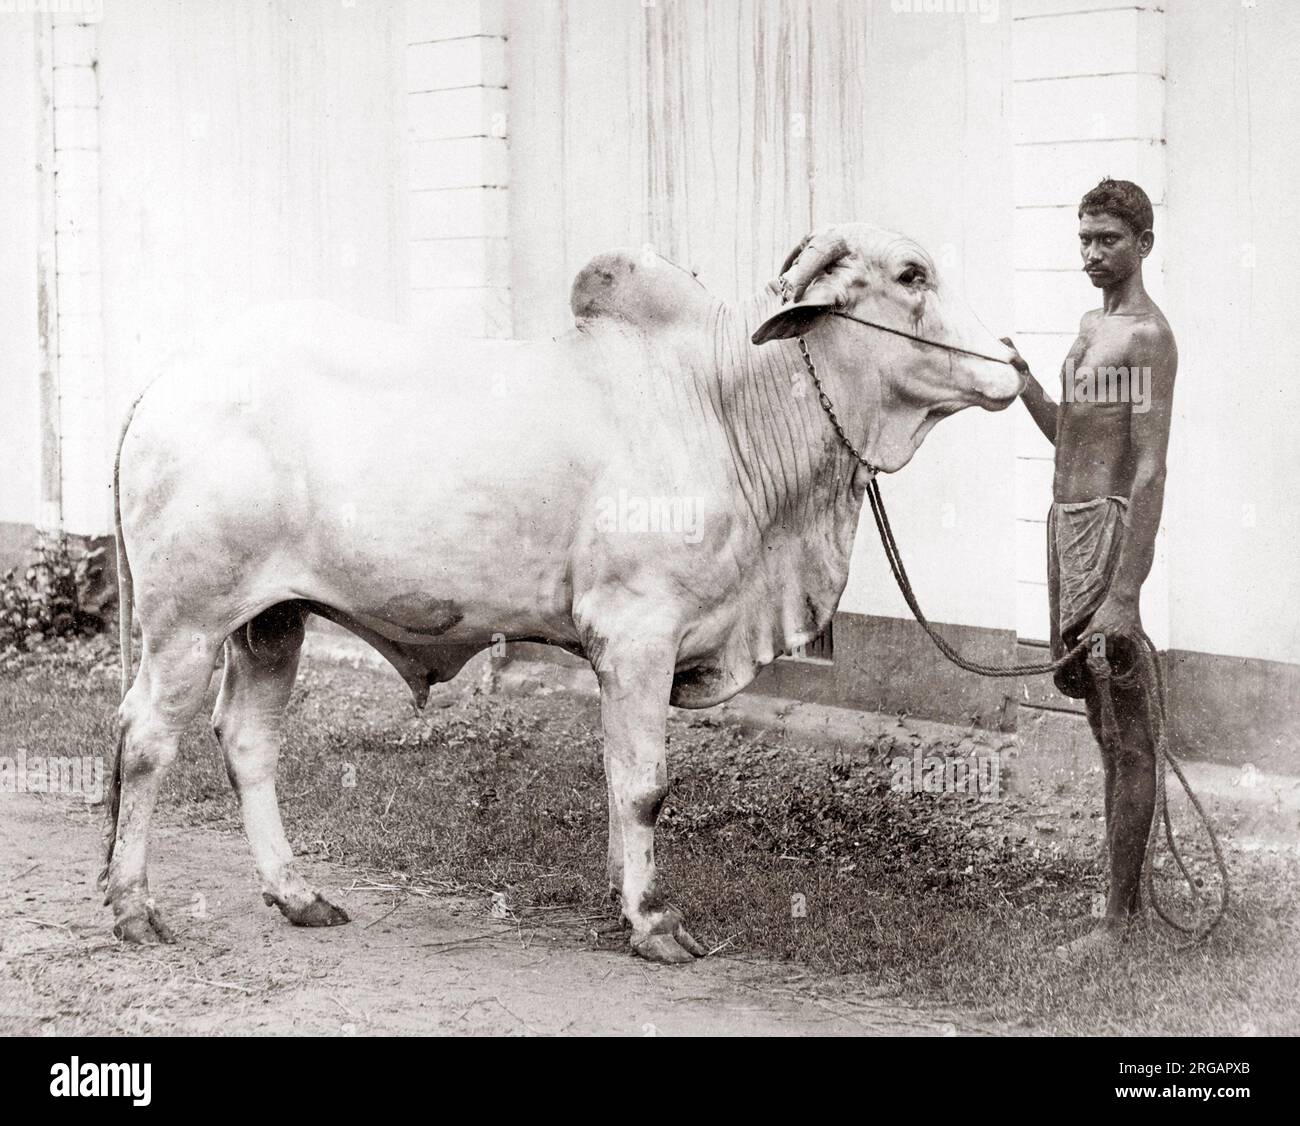 Bull et maître de manutentionnaire natif, Inde, c.1880 Banque D'Images